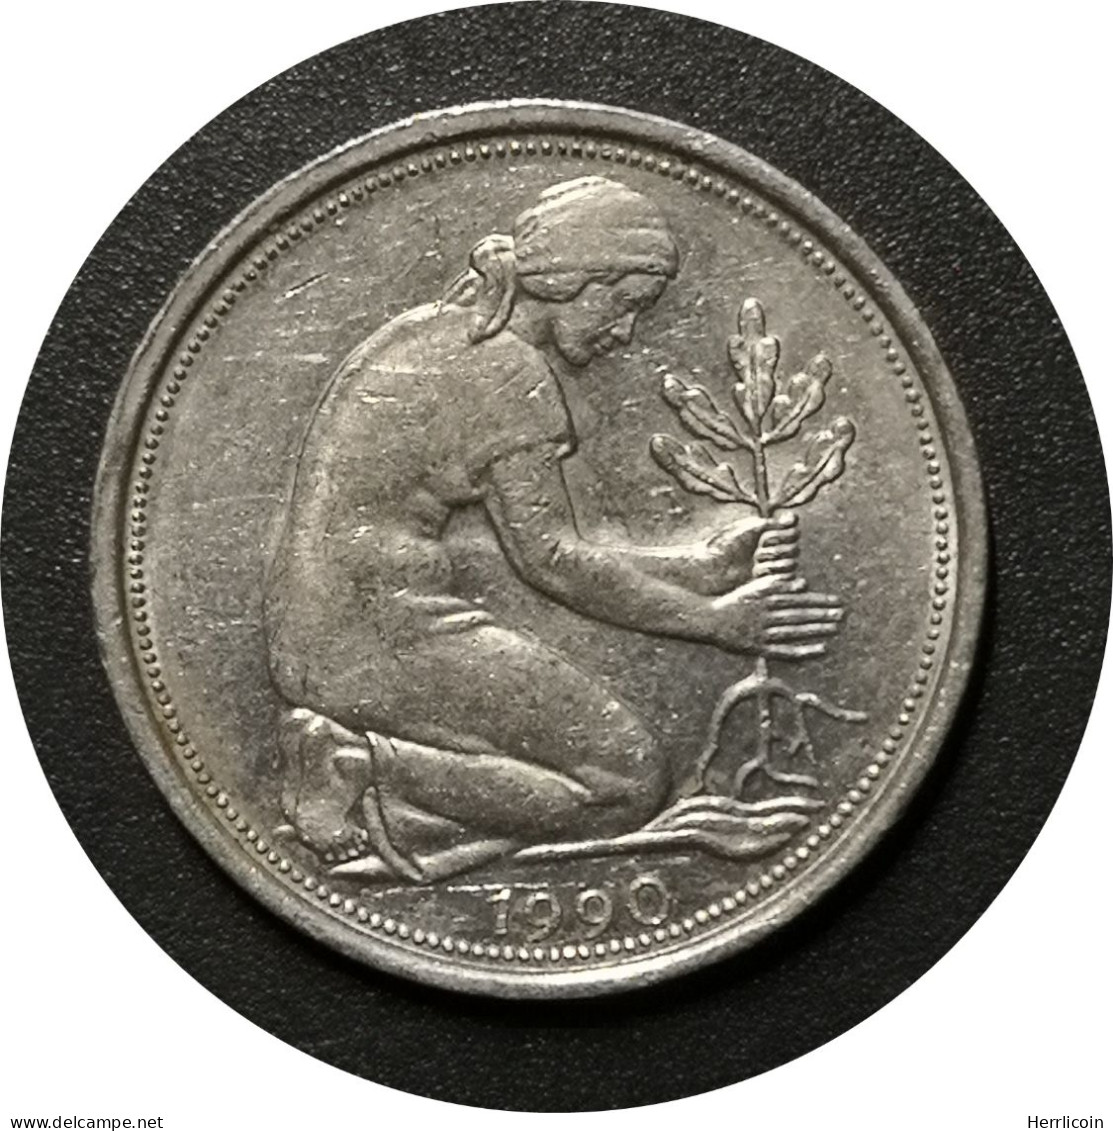 Monnaie Allemagne - 1990 A - 50 Pfennig Bundesrepublik Deutschland - 50 Pfennig